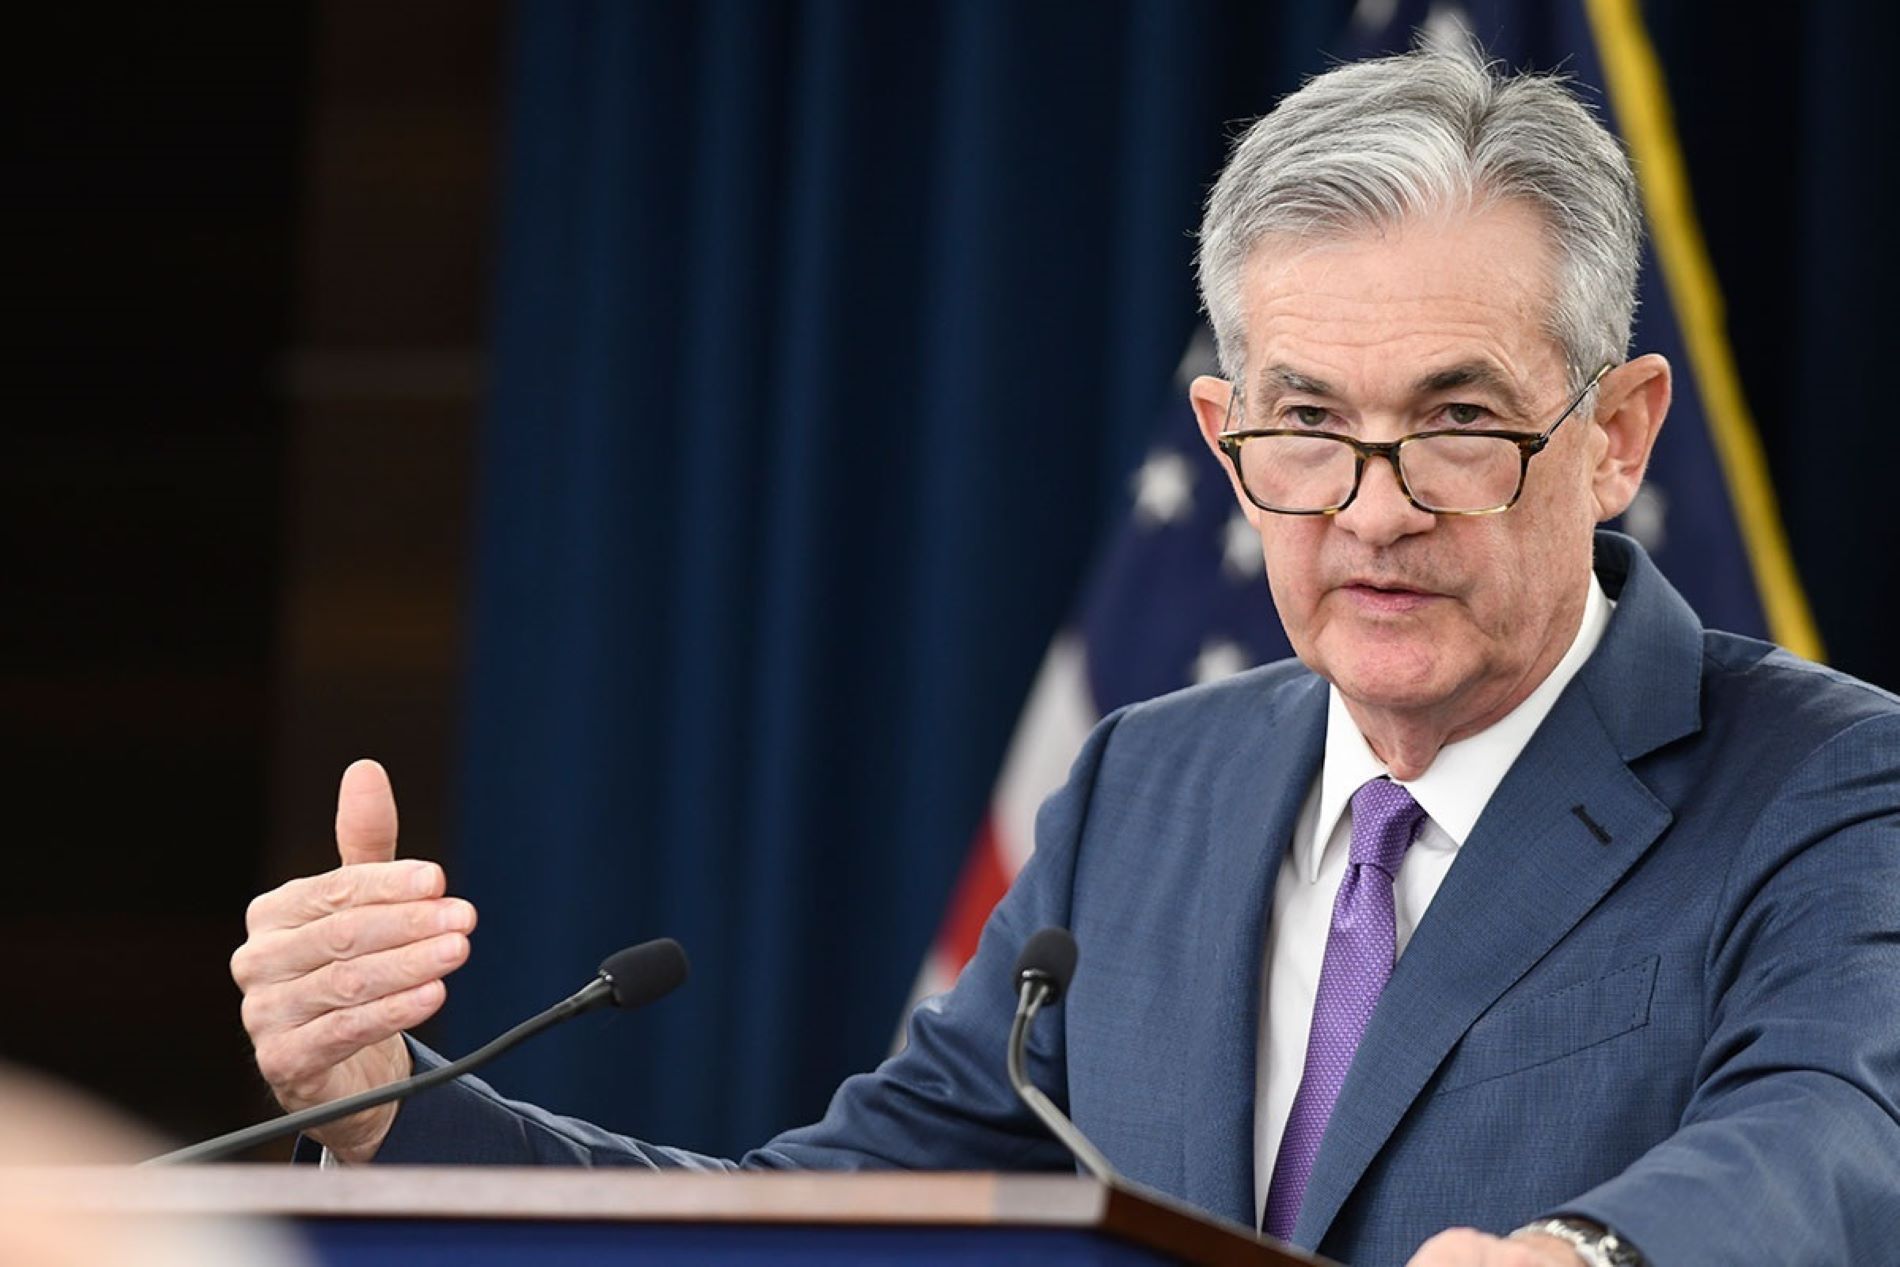 Powell defiende la independencia de la Fed para tomar decisiones impopulares que bajen la inflación